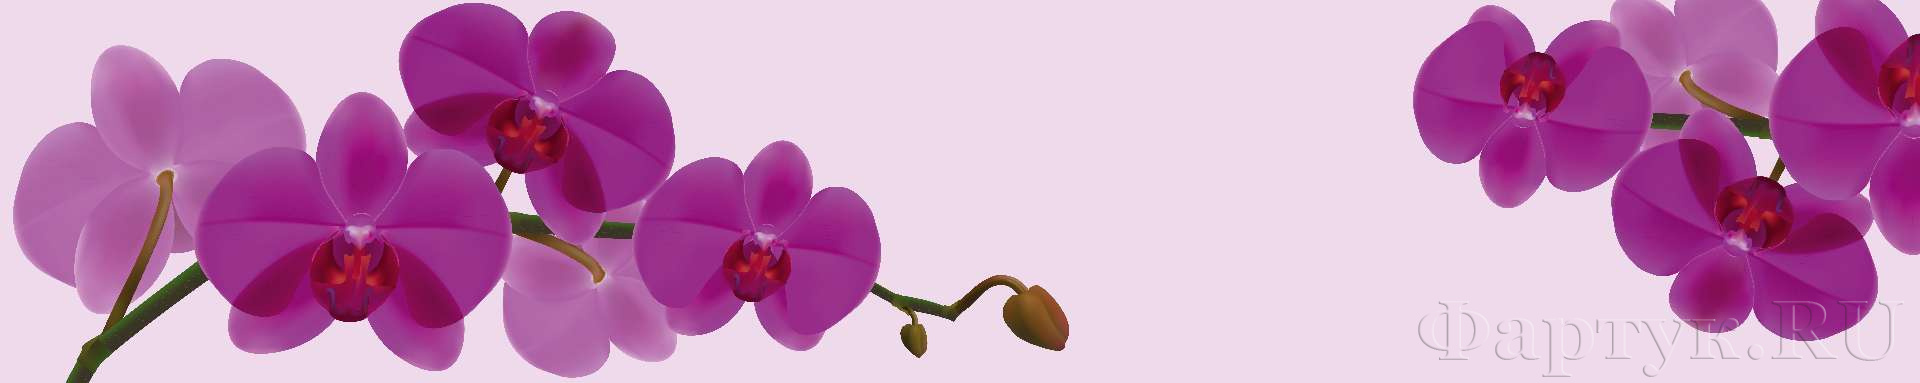 Рисованная орхидея